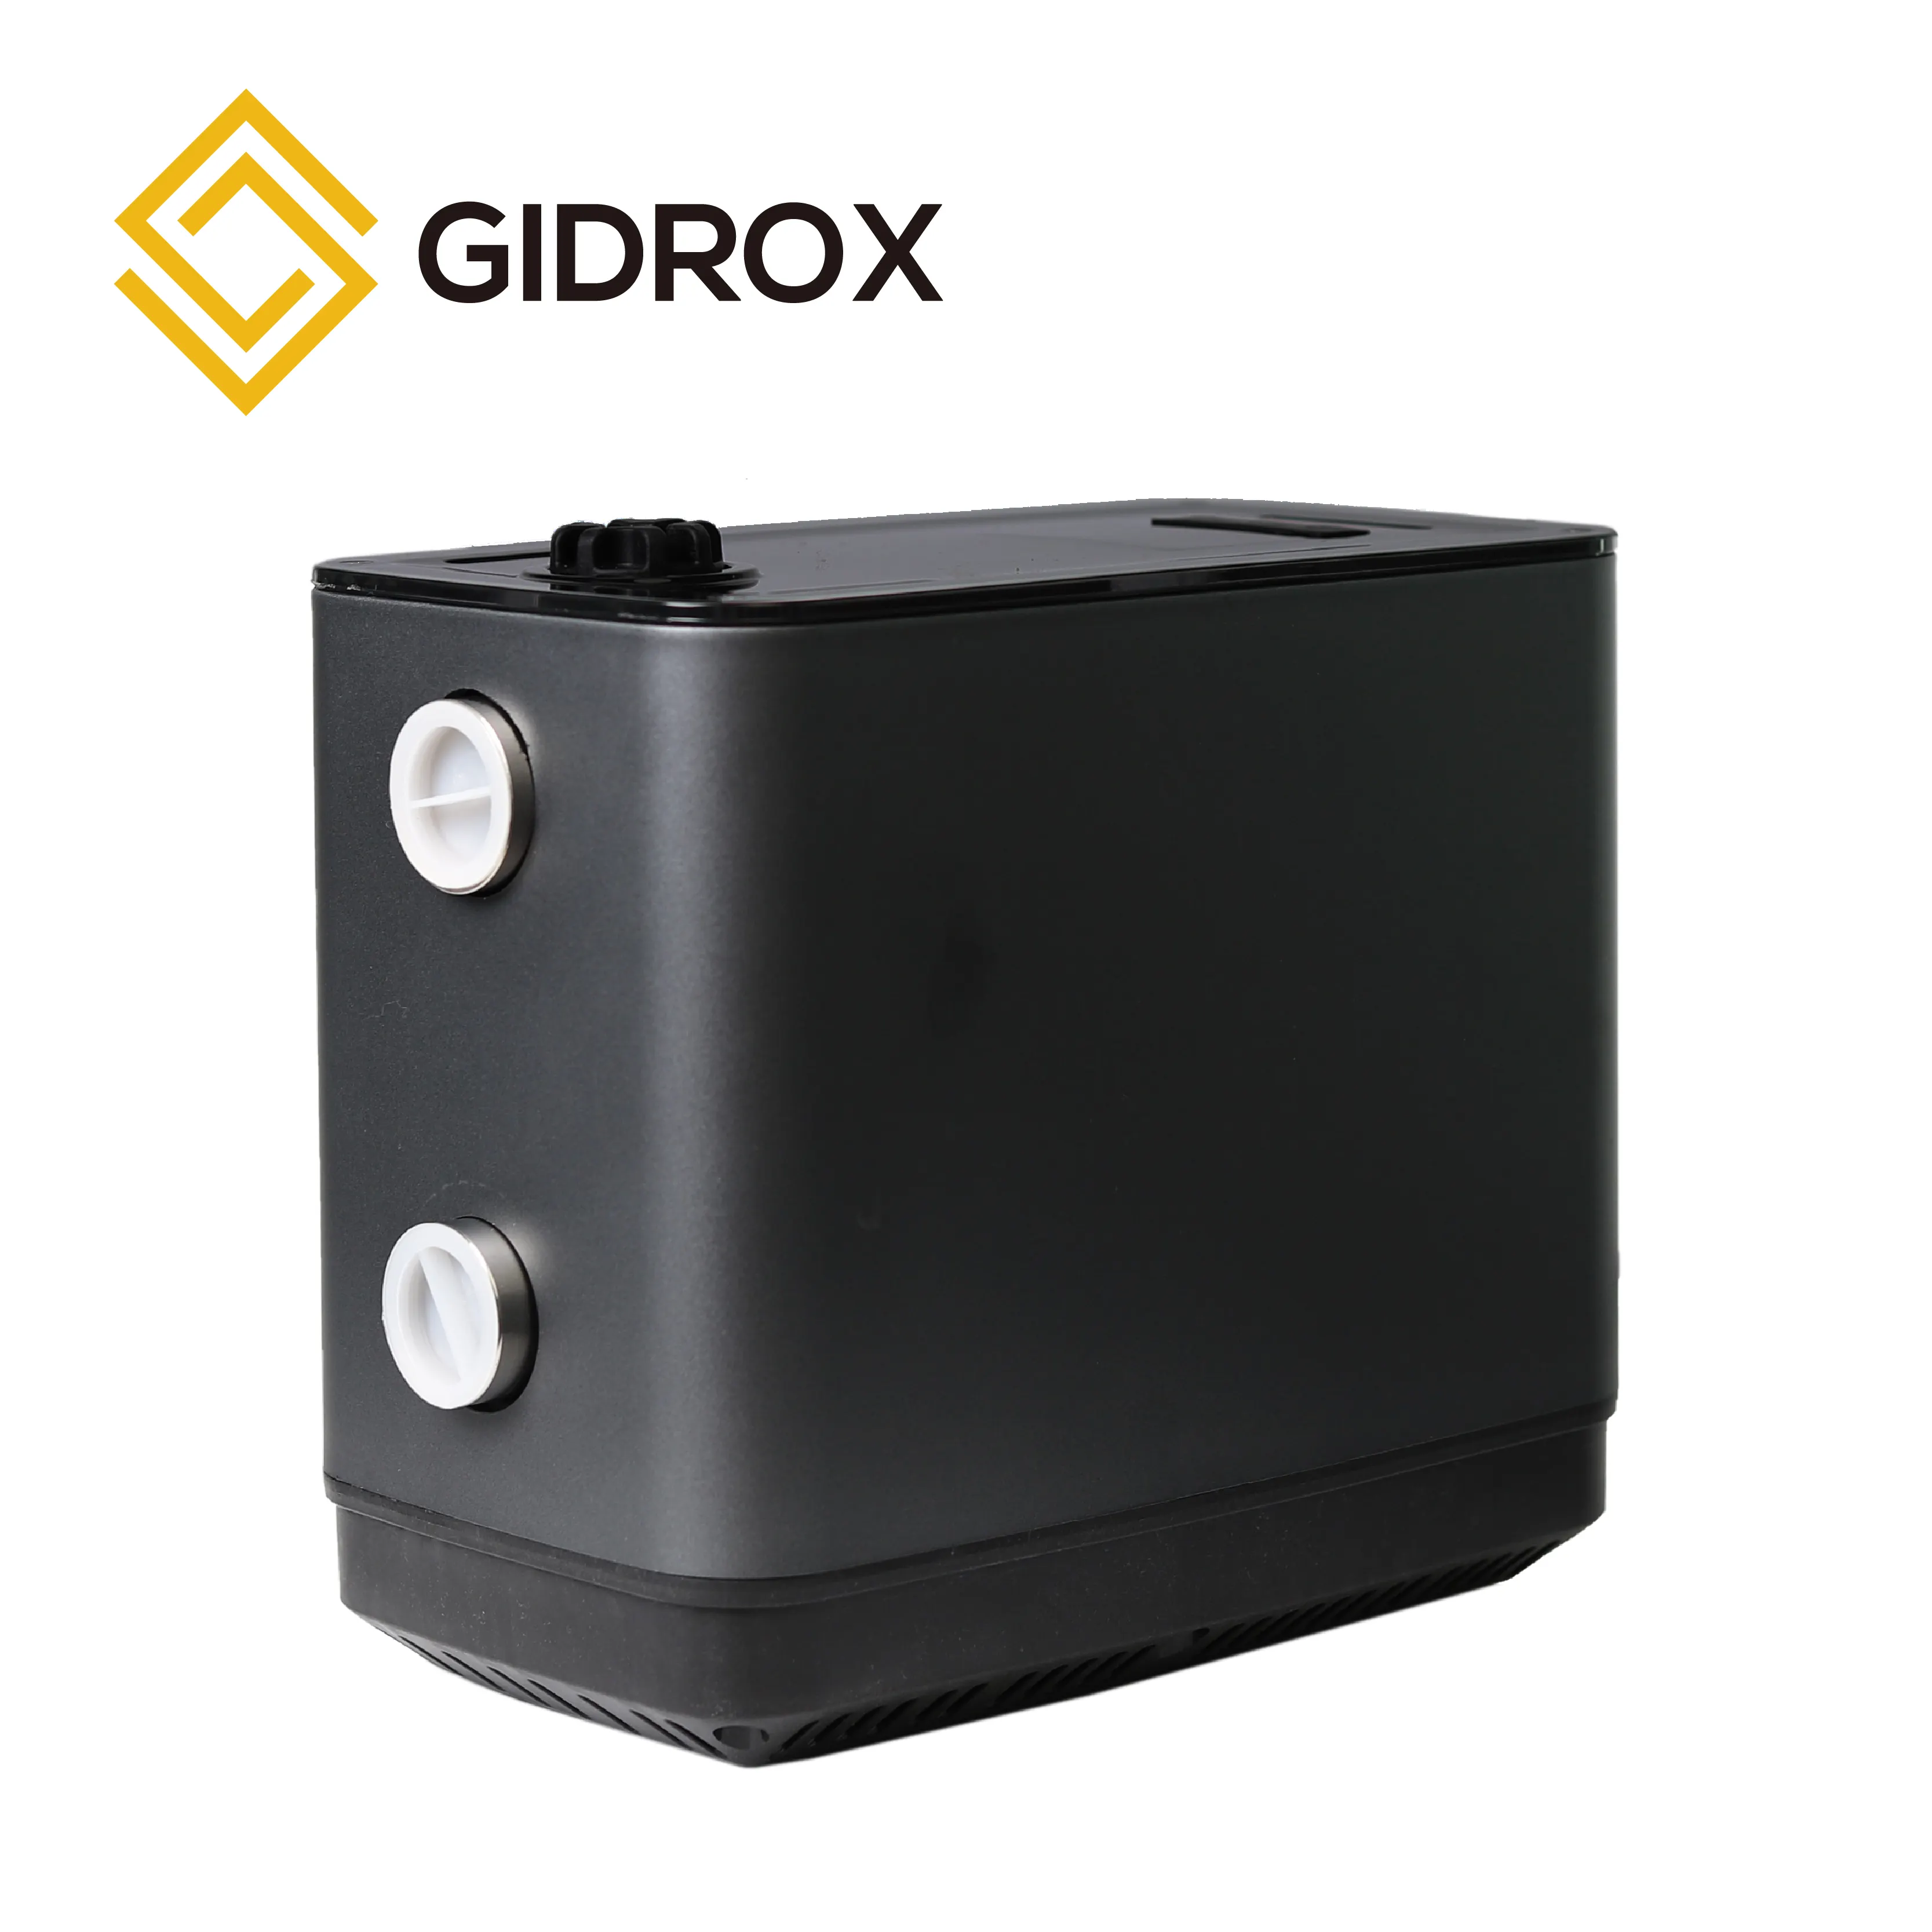 GIDROX pompe de surpression d'eau domestique intelligente Système de surpression à vitesse variable Pompe à aimant permanent avec auto-amorçage